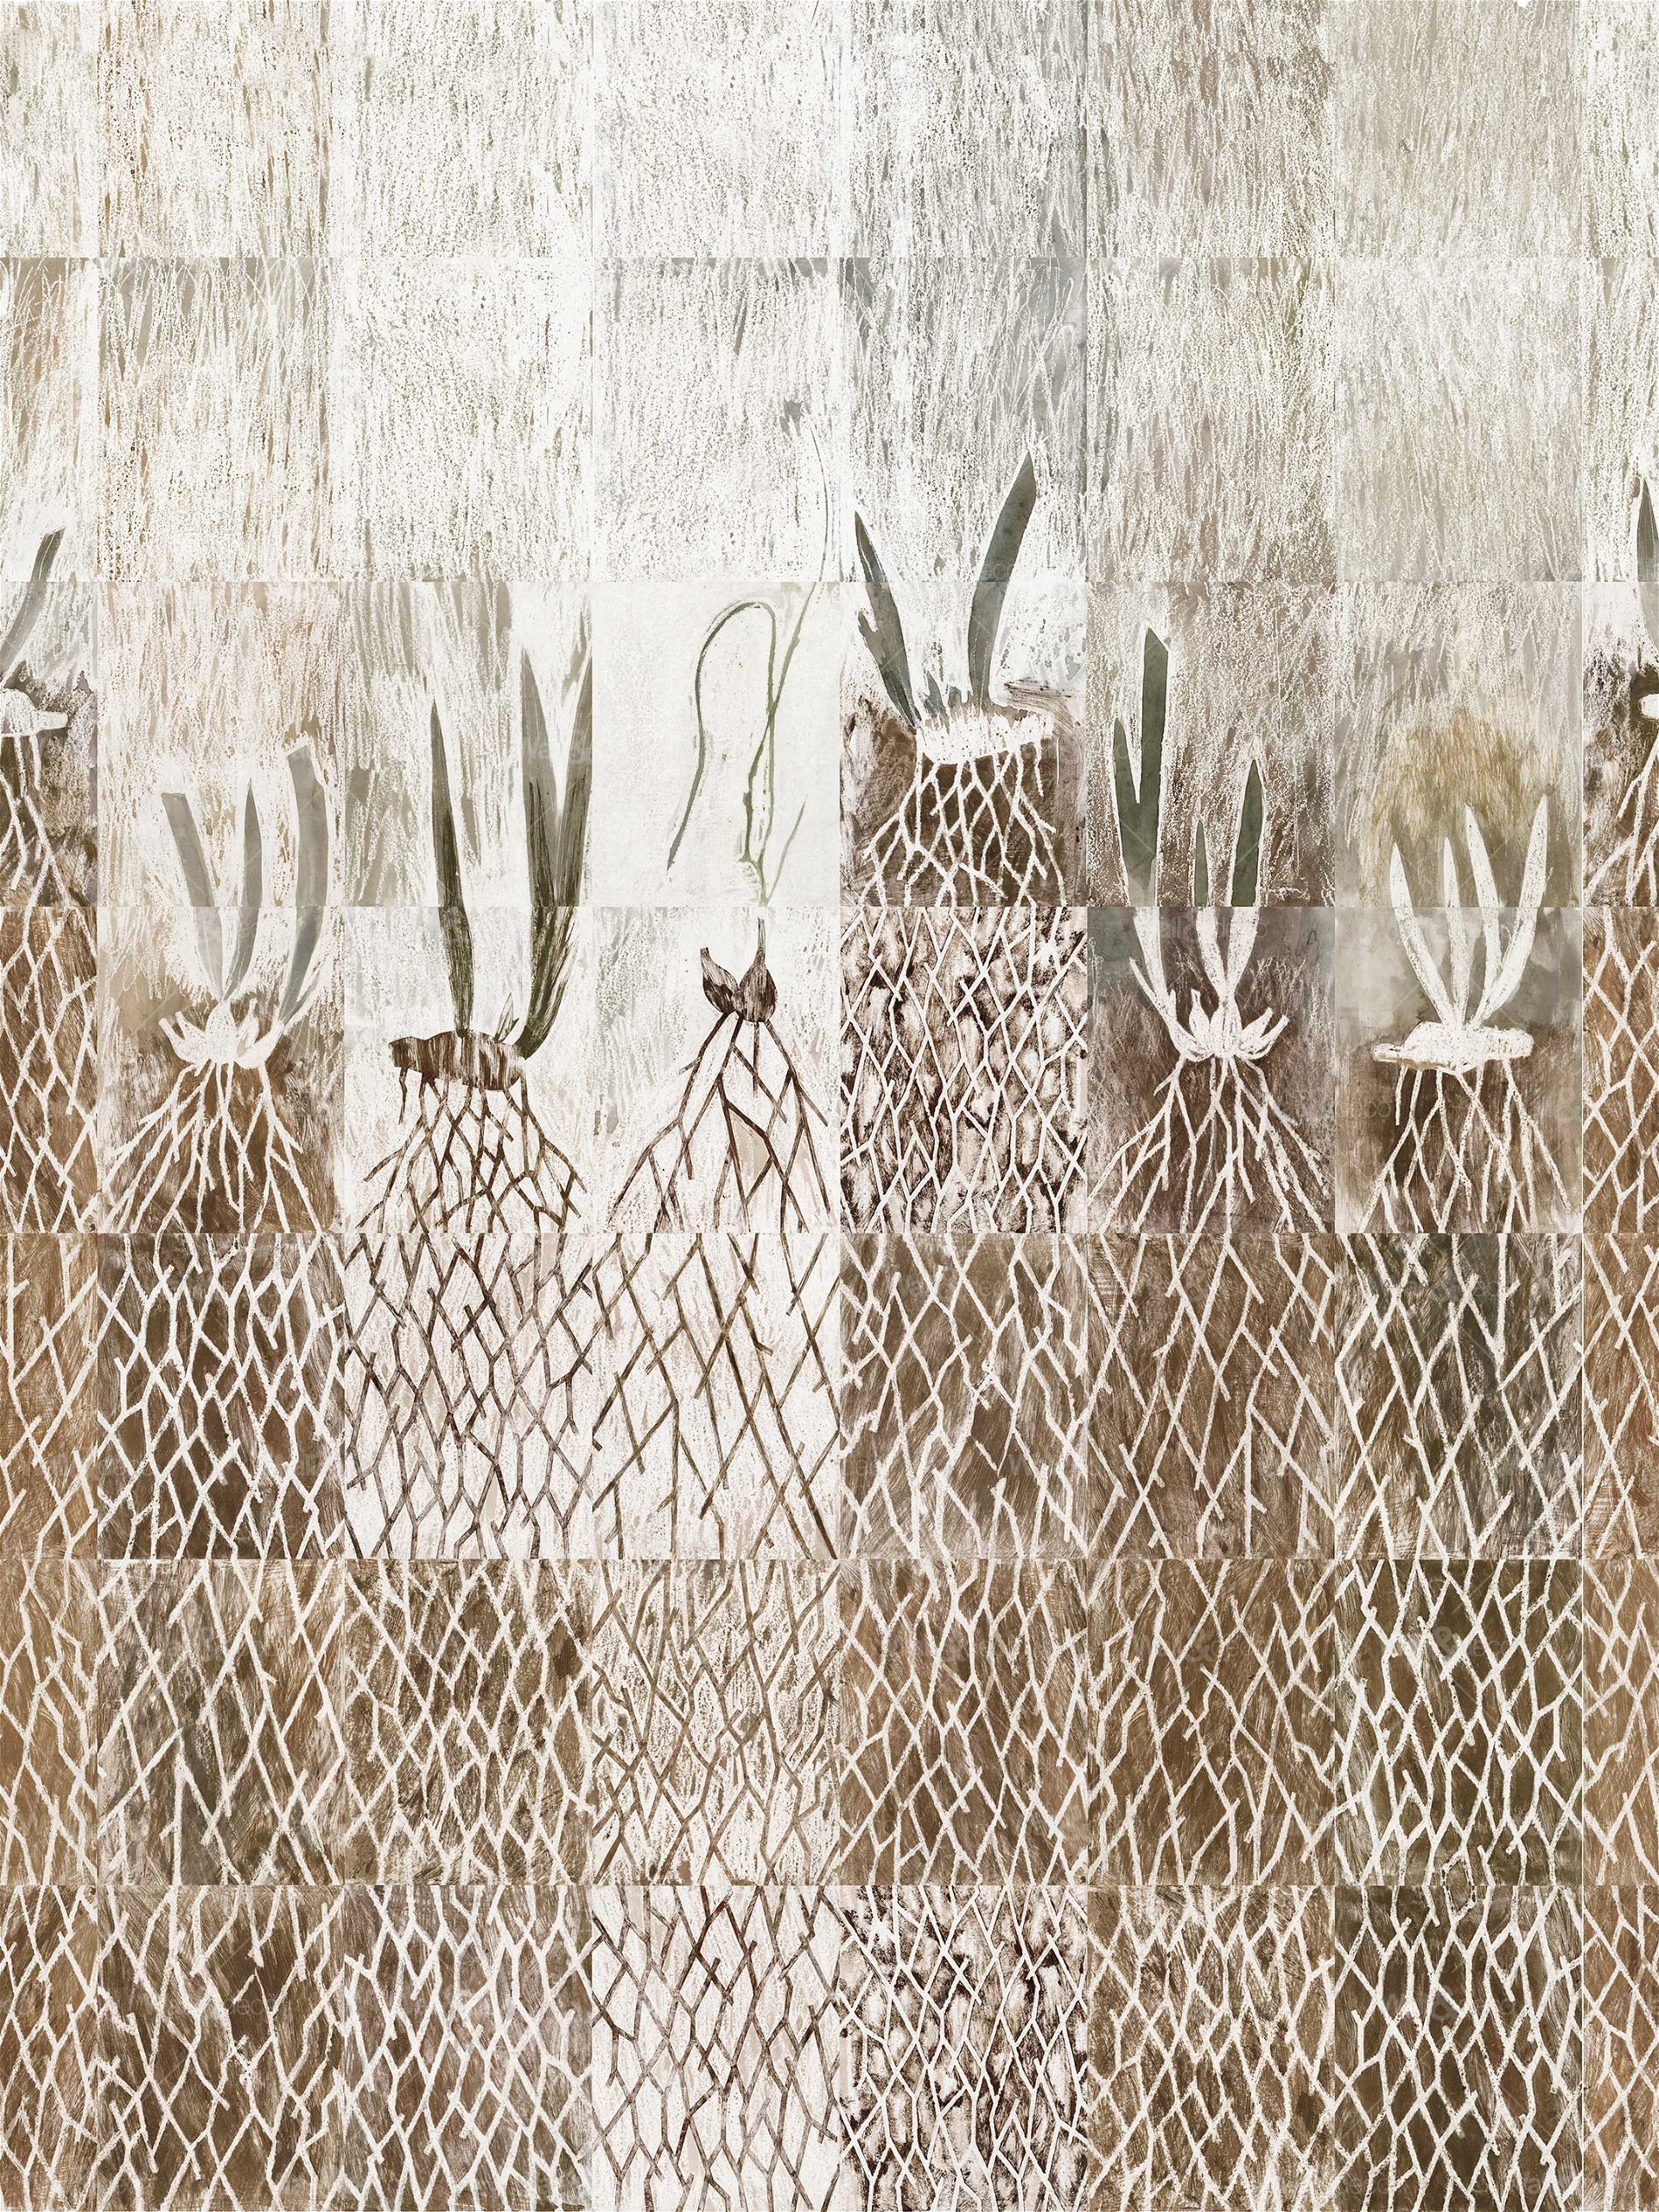 Back to the Roots: Gelungen: Das Wallpaper »WDBM2001« von Francesca Zoboli vereint abstrahierte Botanikmotive in Brauntönen mit einem geometrischen Look.